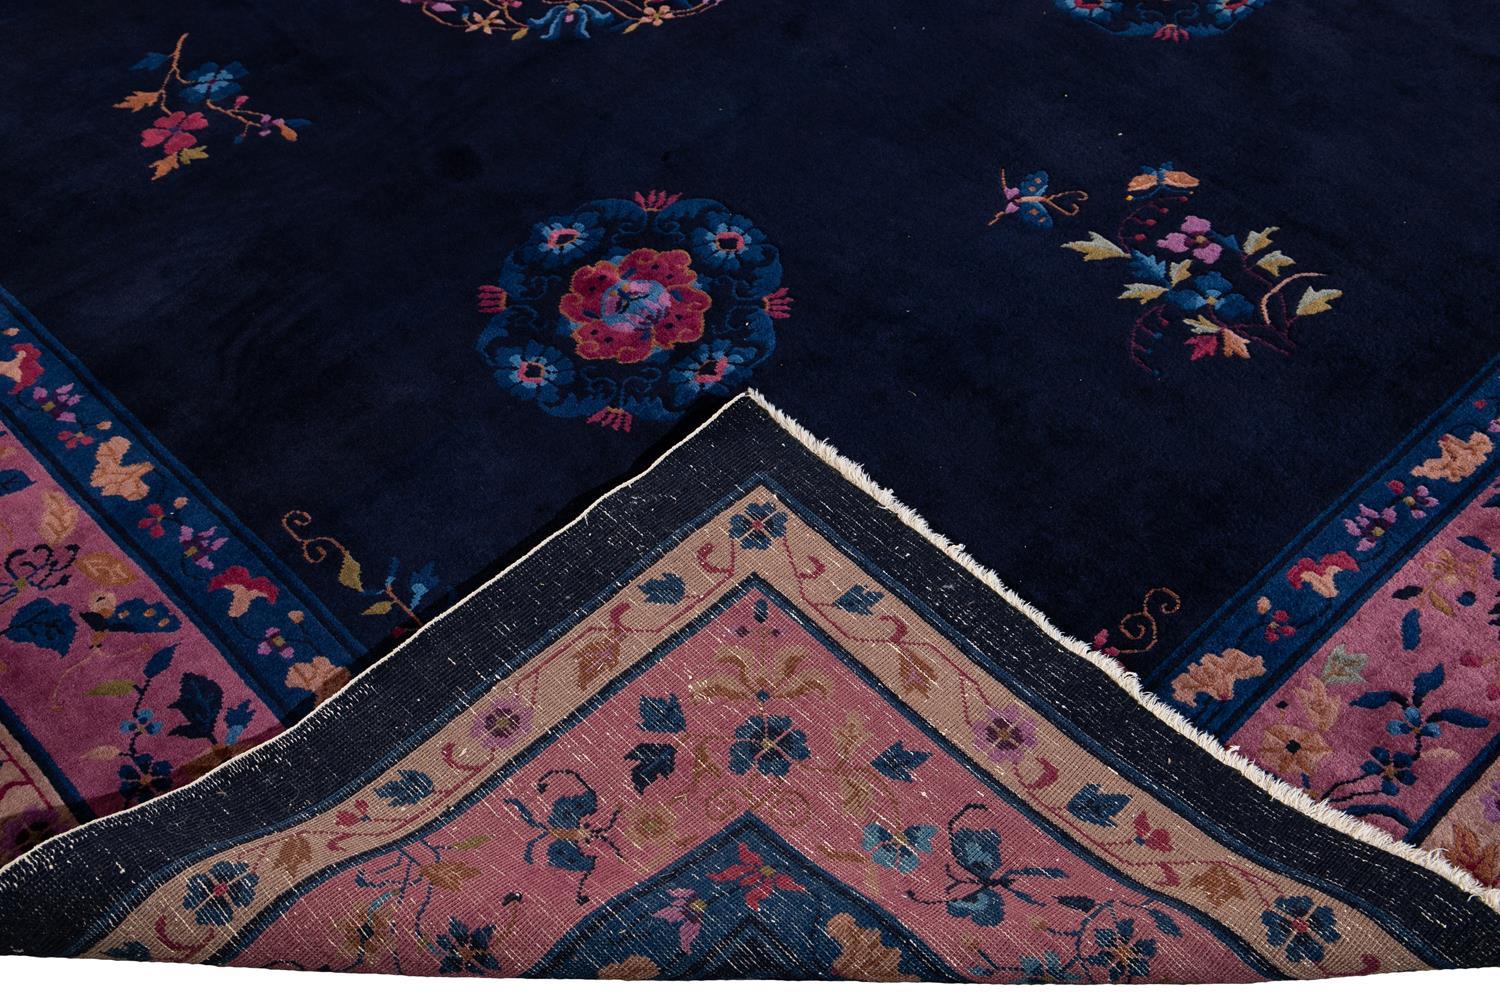 Schöner antiker chinesischer Art-Déco-Teppich, handgeknüpfte Wolle mit dunkelblauem Feld, violetter Rahmen in einem klassischen chinesischen Blumenmuster, um 1920.

Dieser Teppich misst: 9' x 11'10